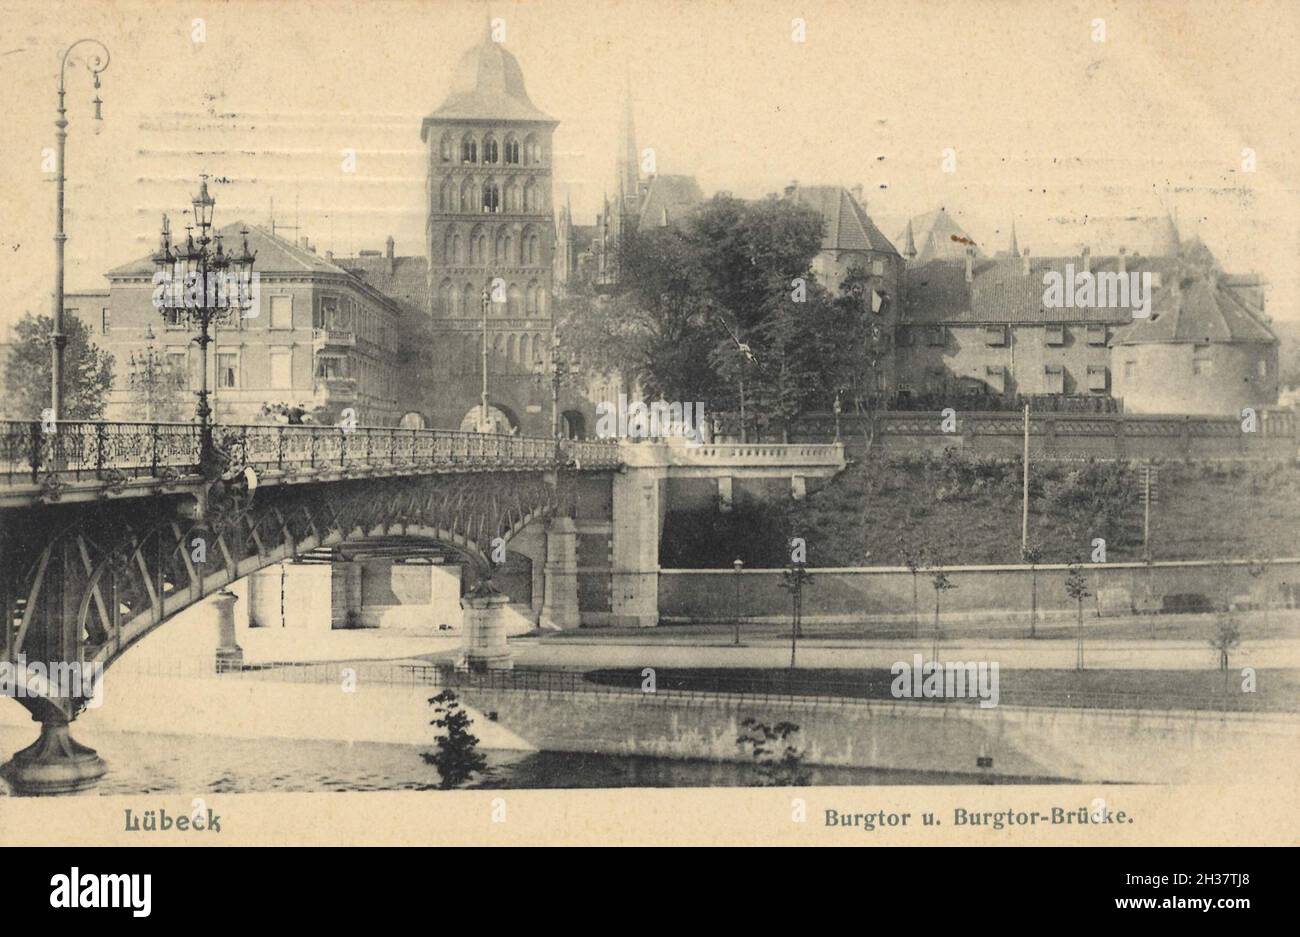 Burgtor von Lübeck, Schleswig-Holstein, Deutschland, Ansicht von CA 1910, digitale Reproduktion einer gemeinfreien Postkarte Banque D'Images